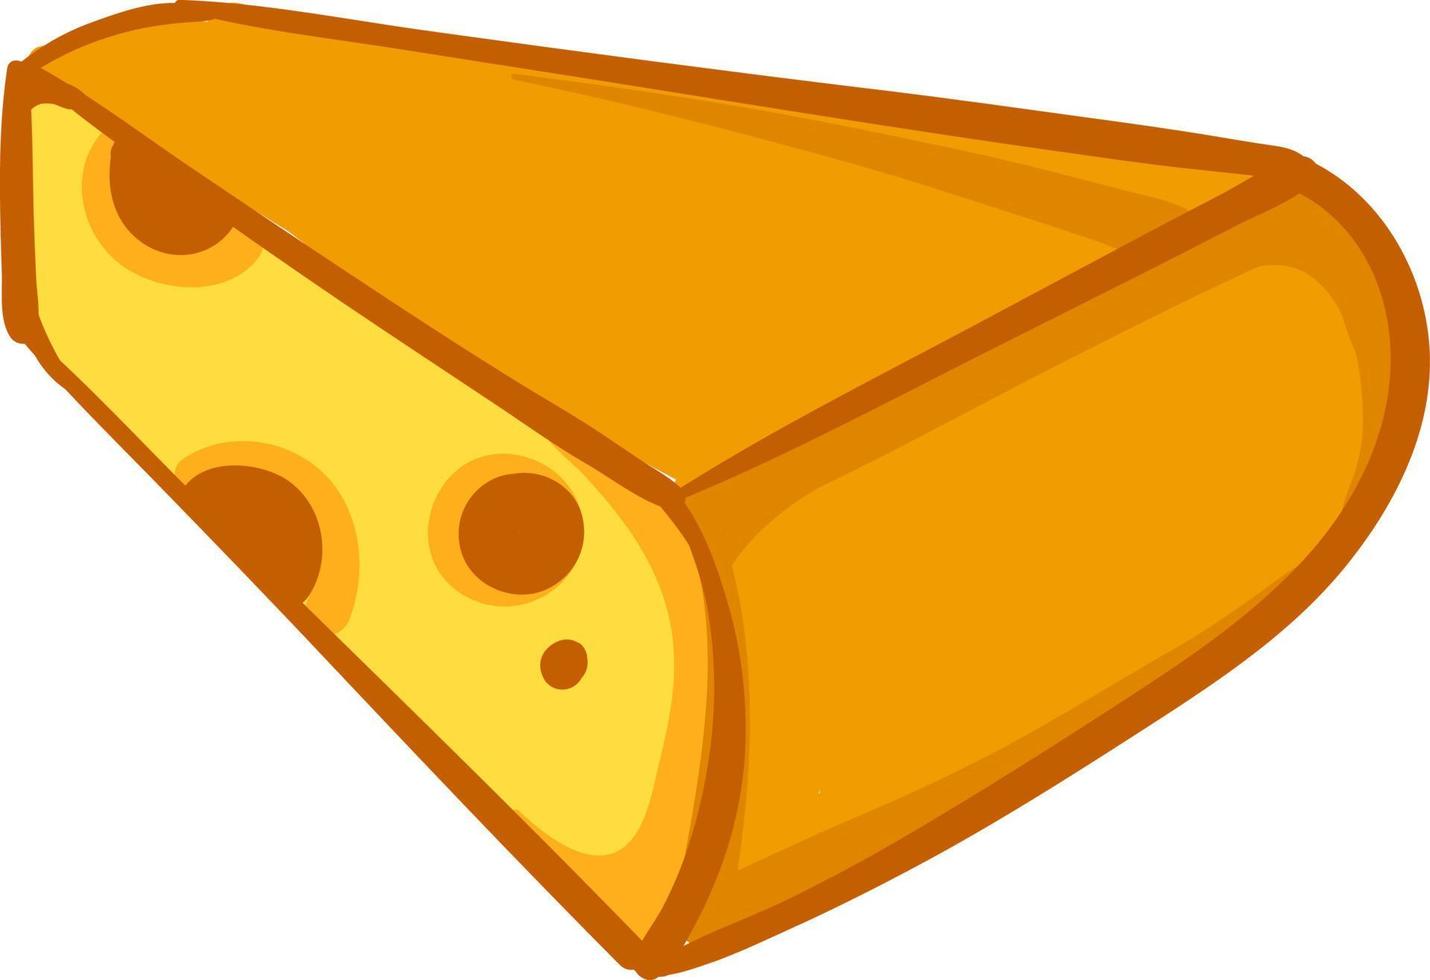 intéressant morceau de fromage, illustration, vecteur sur fond blanc.